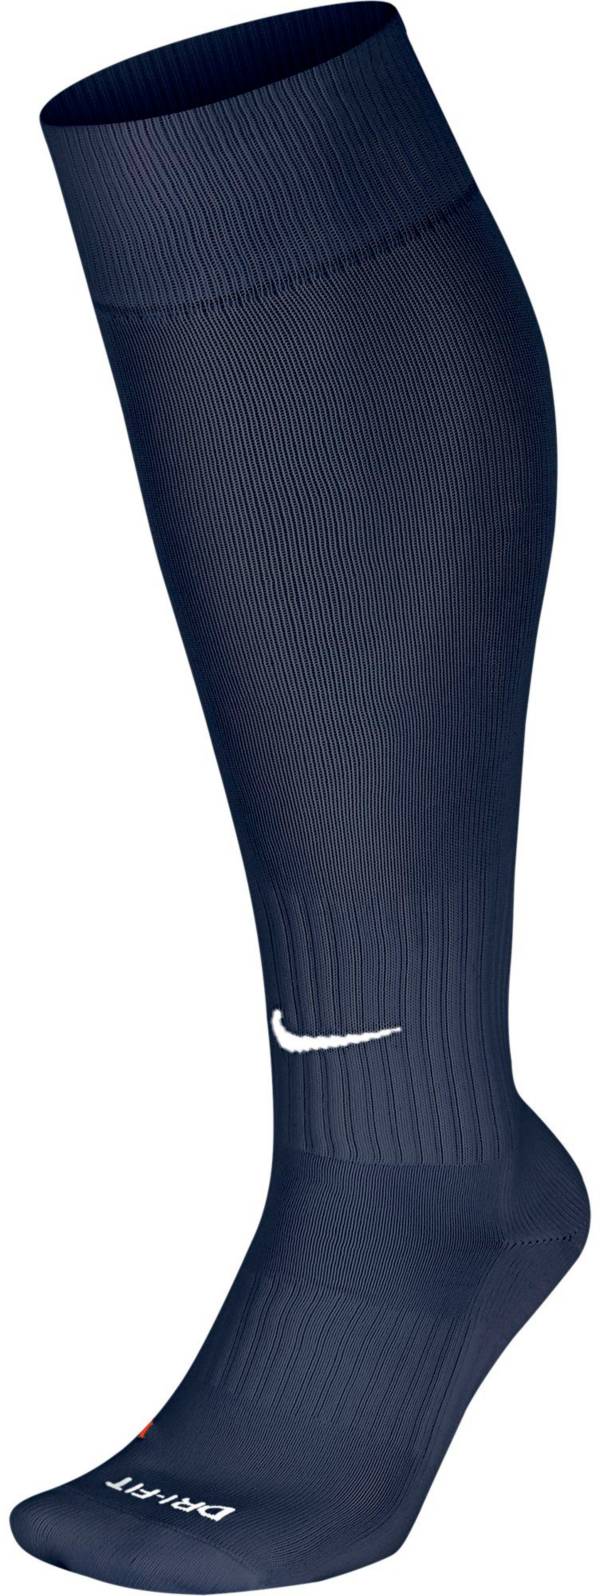 Nike Academy Soccer Socks | Dick's Sporting Goods